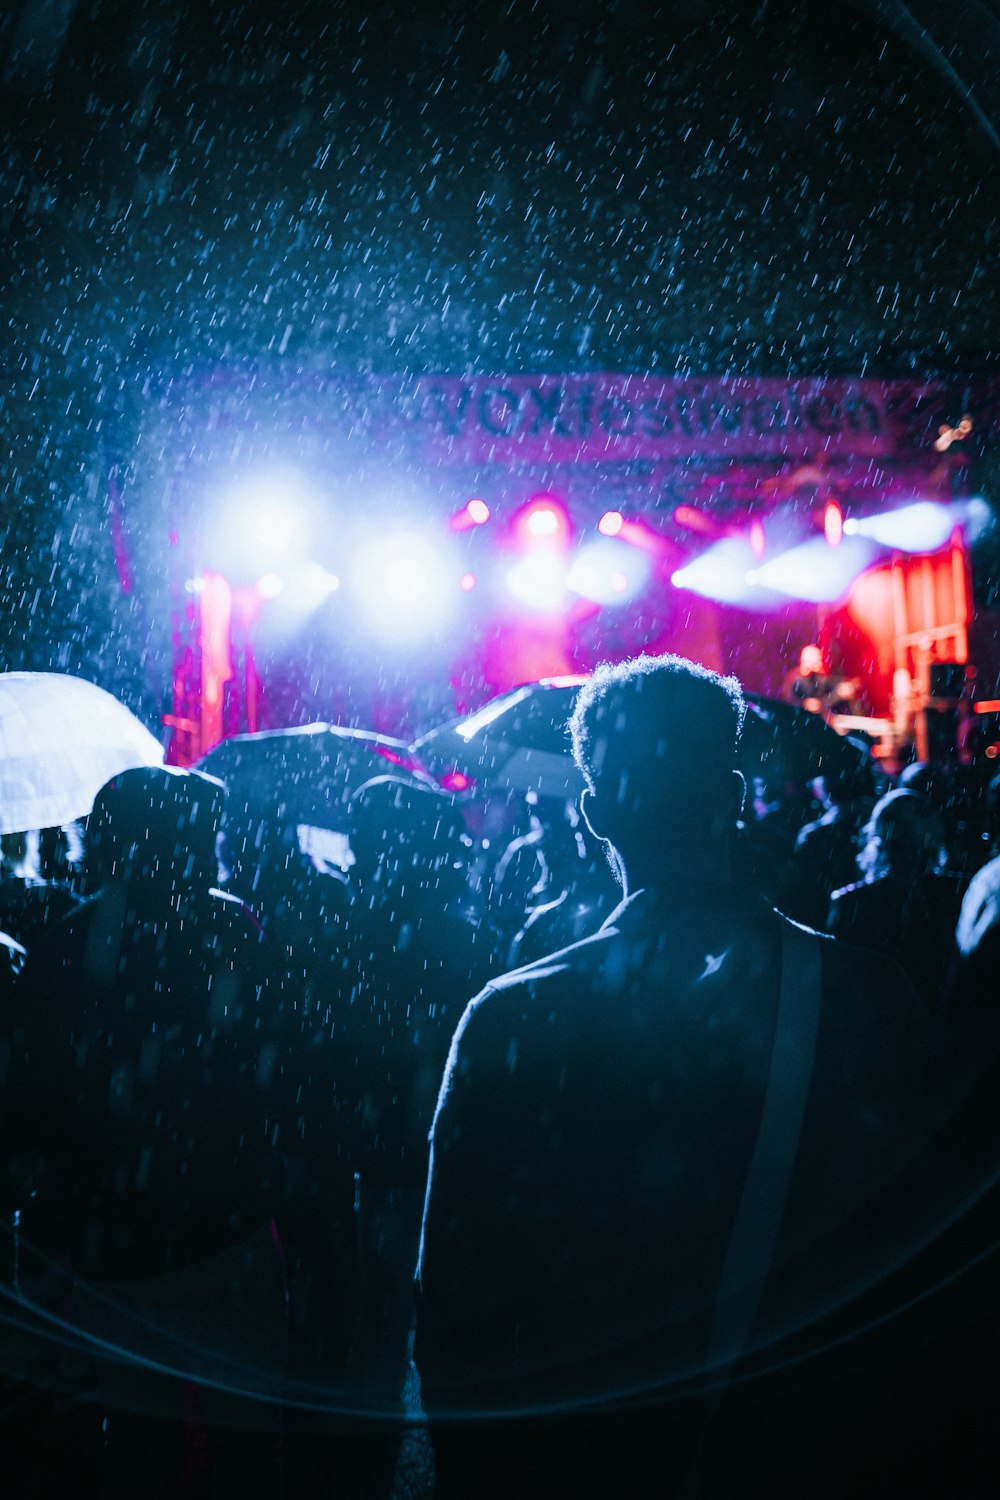 Personnes regardant un concert en direct sous la pluie